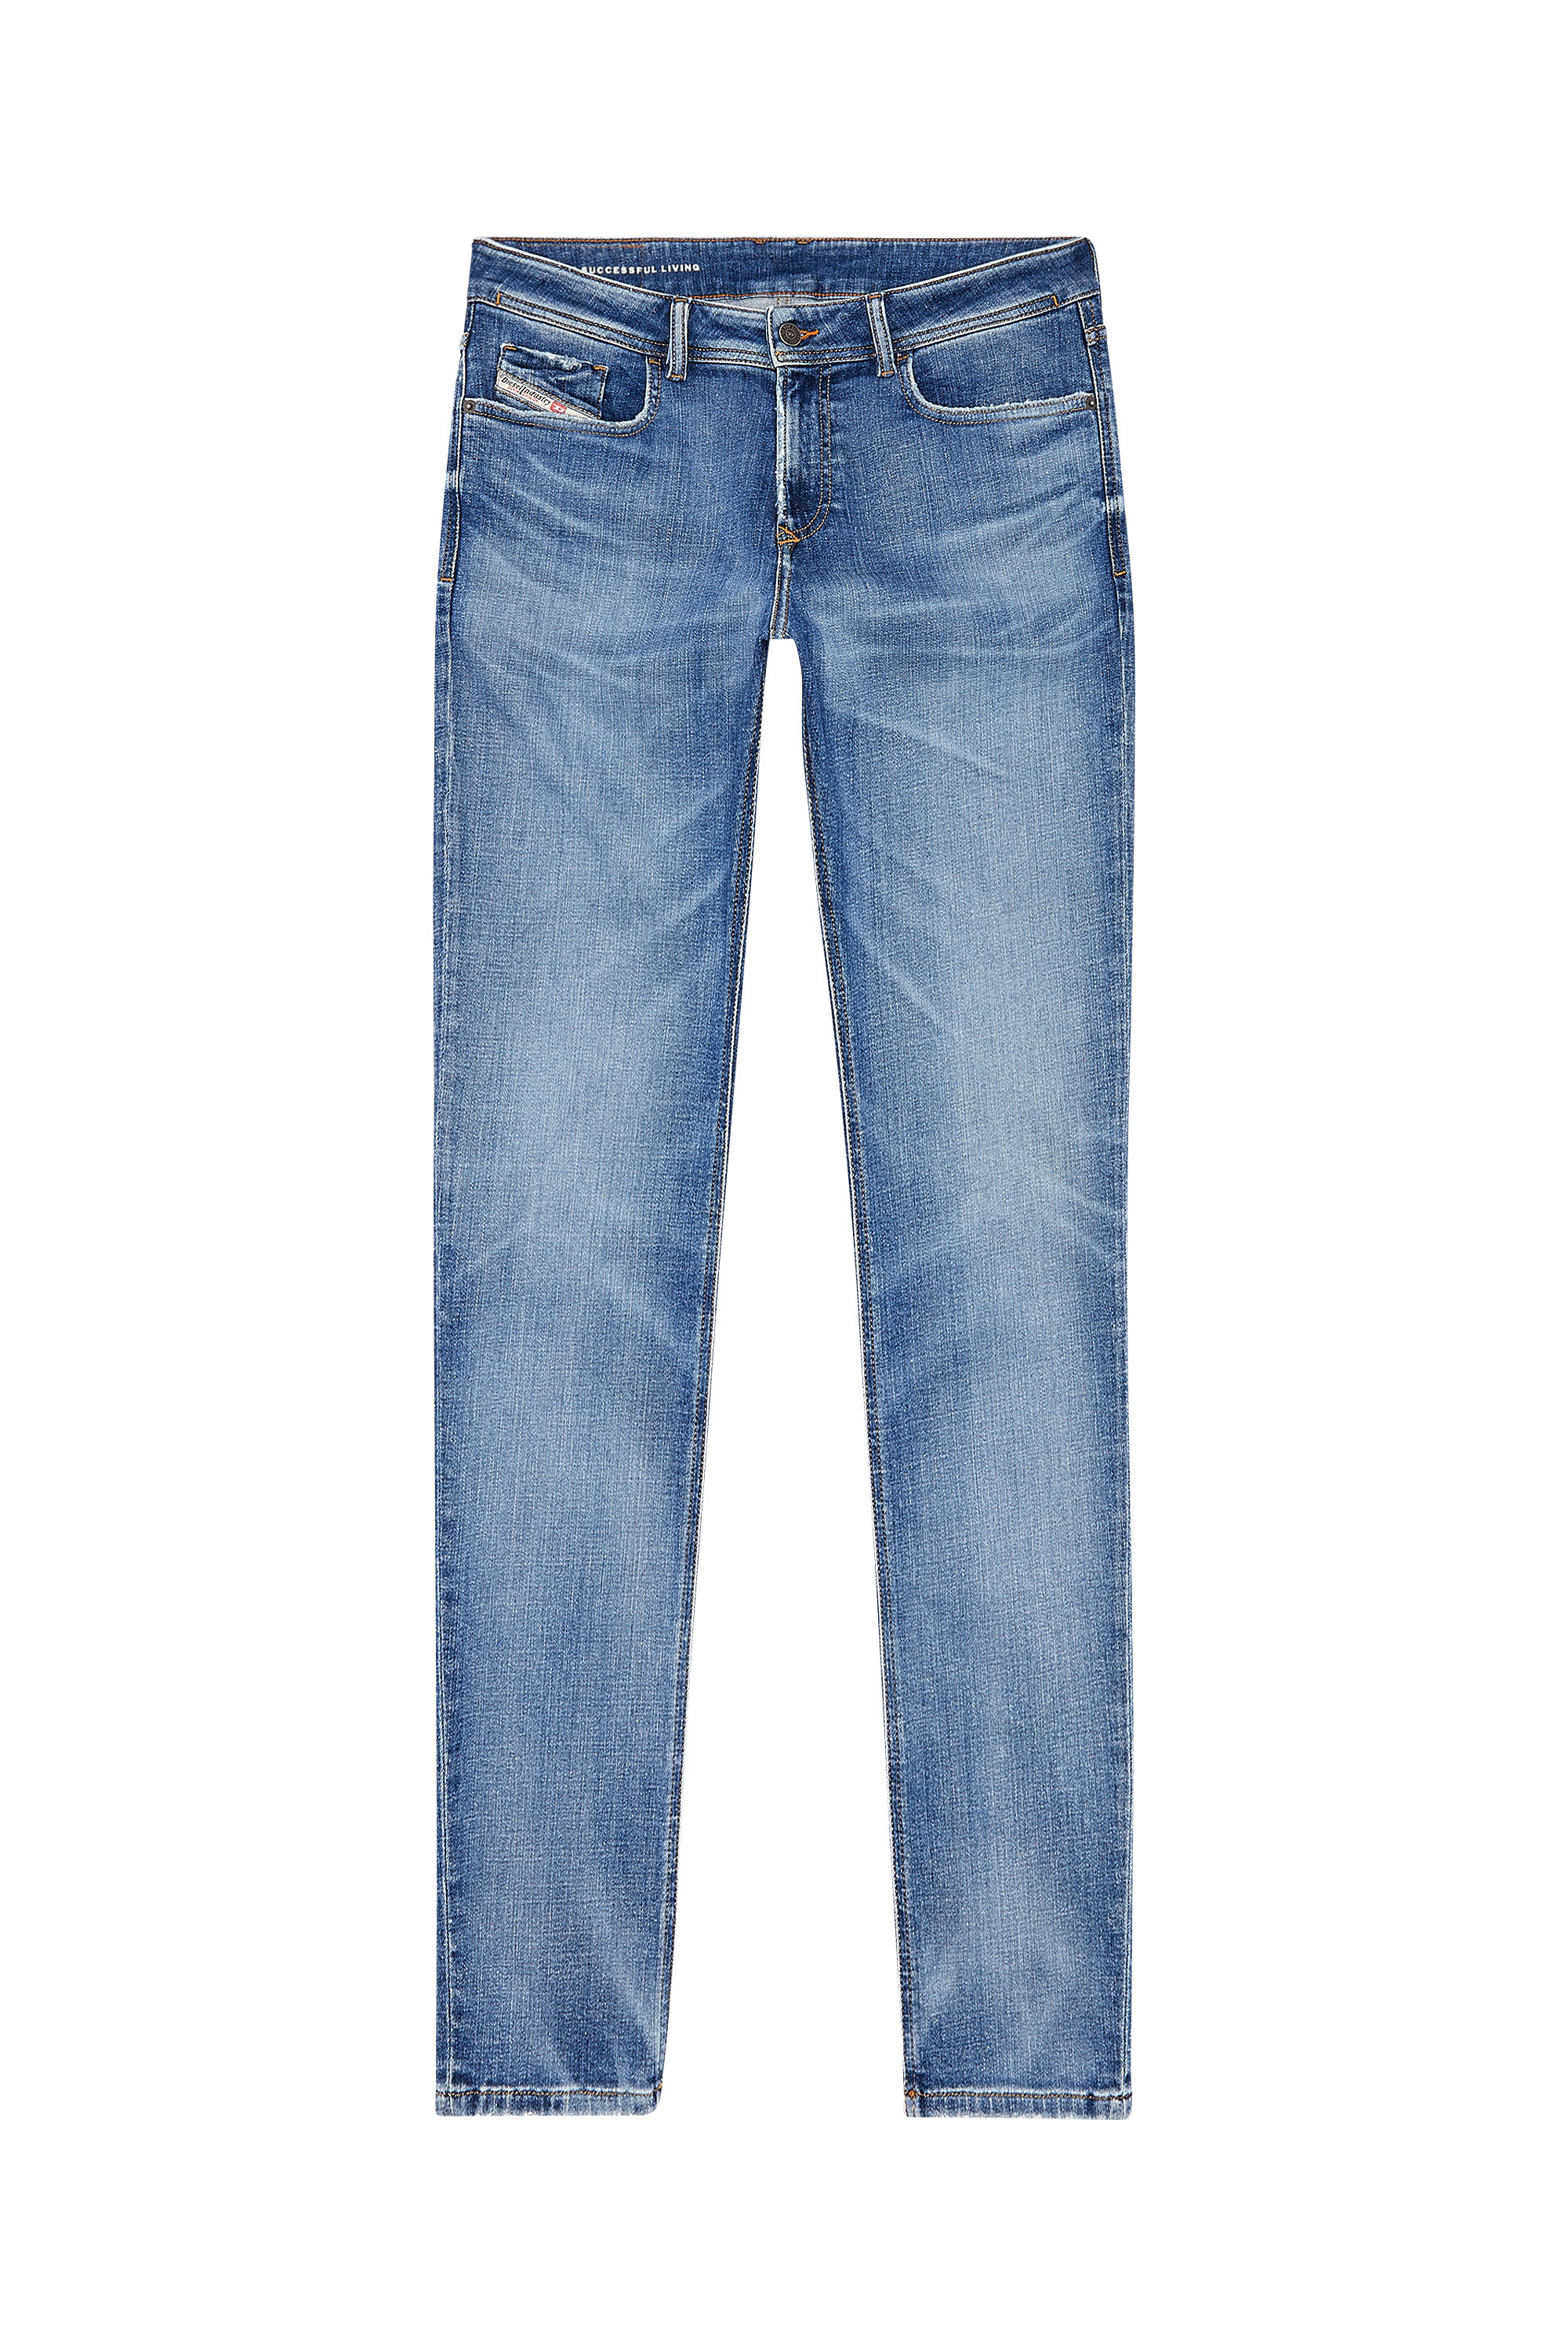 Diesel - Skinny Jeans 1979 Sleenker 09H68, Medium blue - Image 3